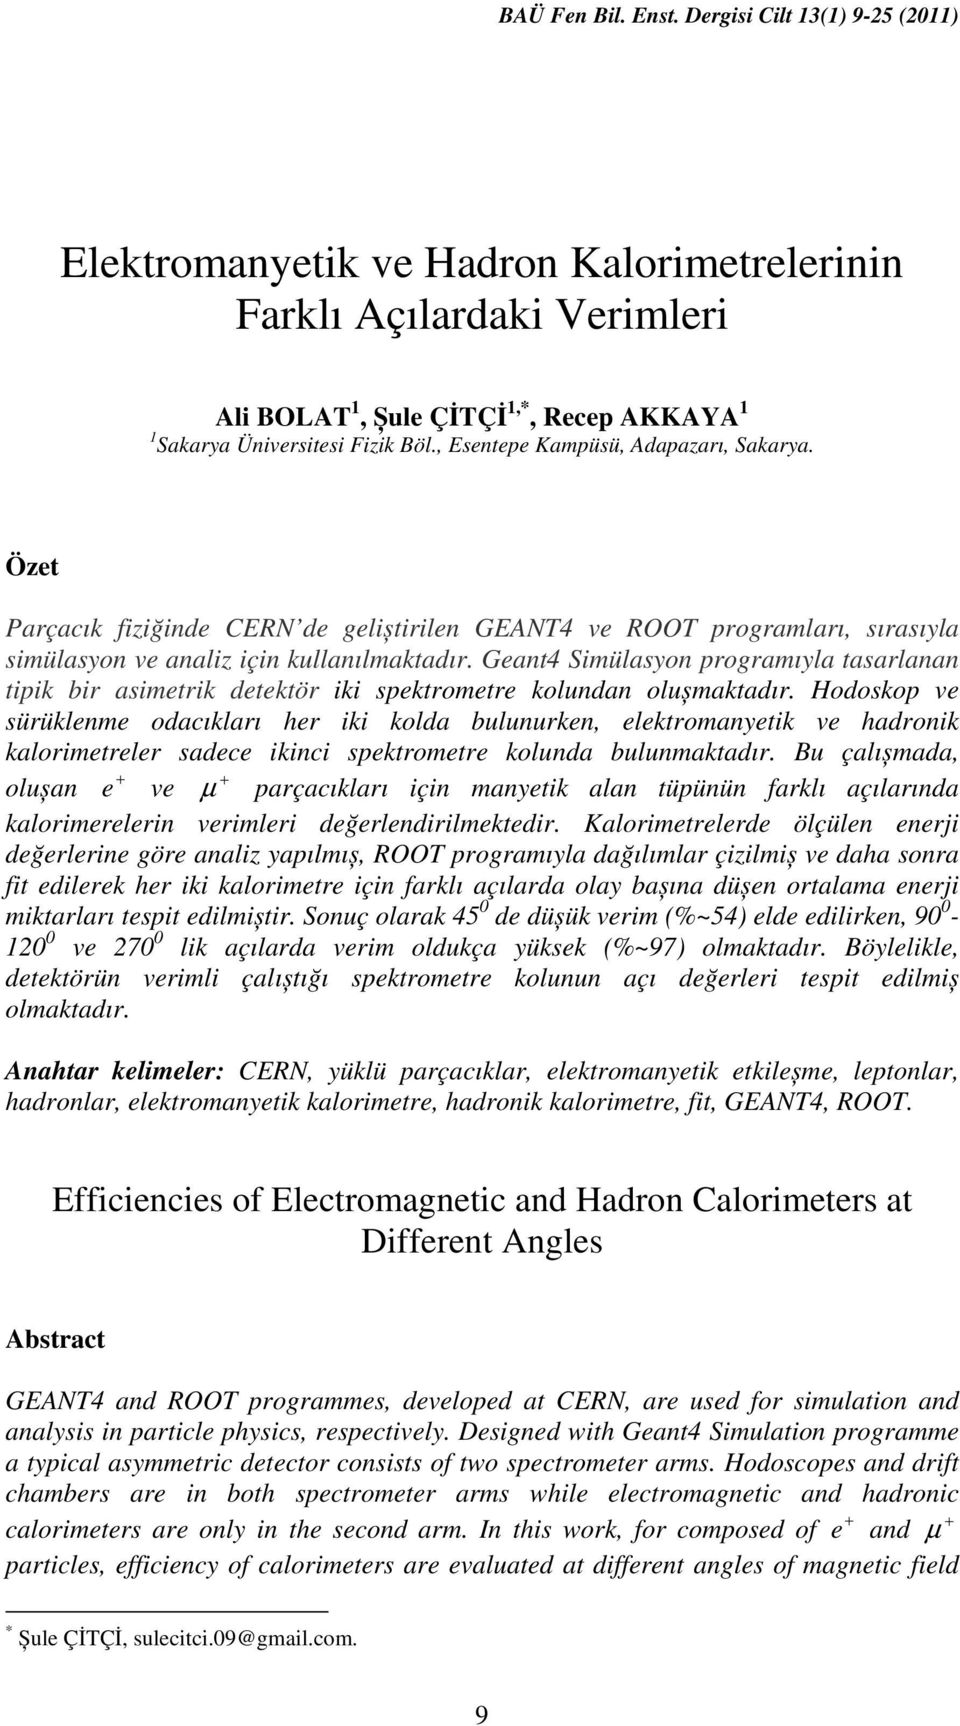 Geant4 Simülasyon programıyla tasarlanan tipik bir asimetrik detektör iki spektrometre kolundan olușmaktadır.